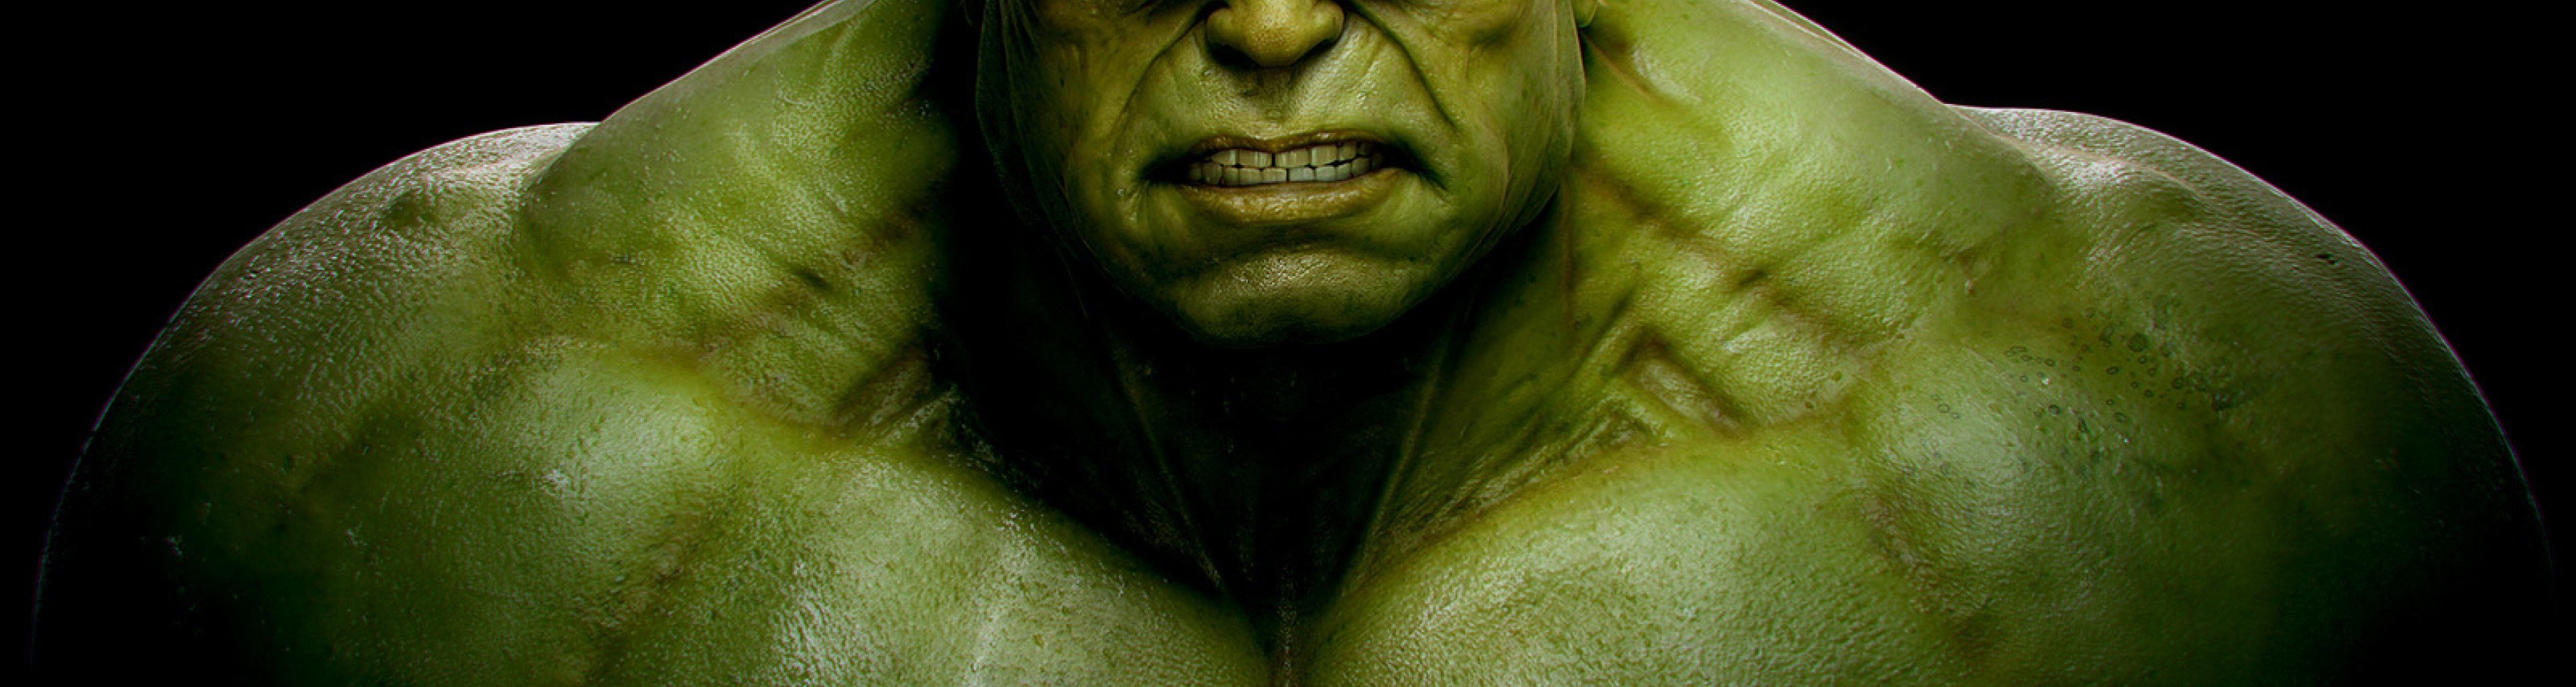 green, Hulk, comic, Character , Movies, Marvel, The, Incredible, Hulk